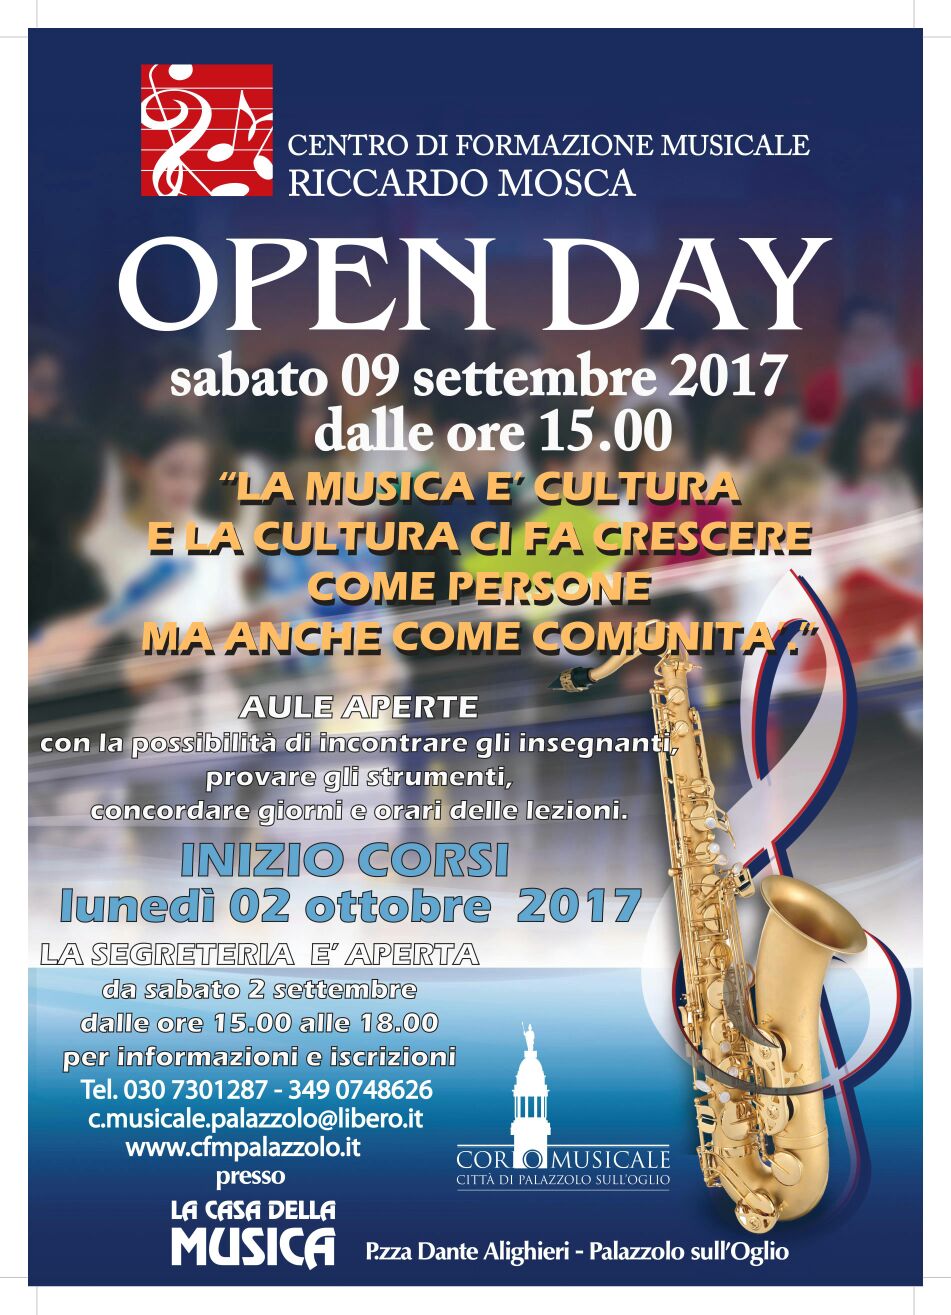 09/09 – Open Day del Centro di Formazione Musicale Riccardo Mosca